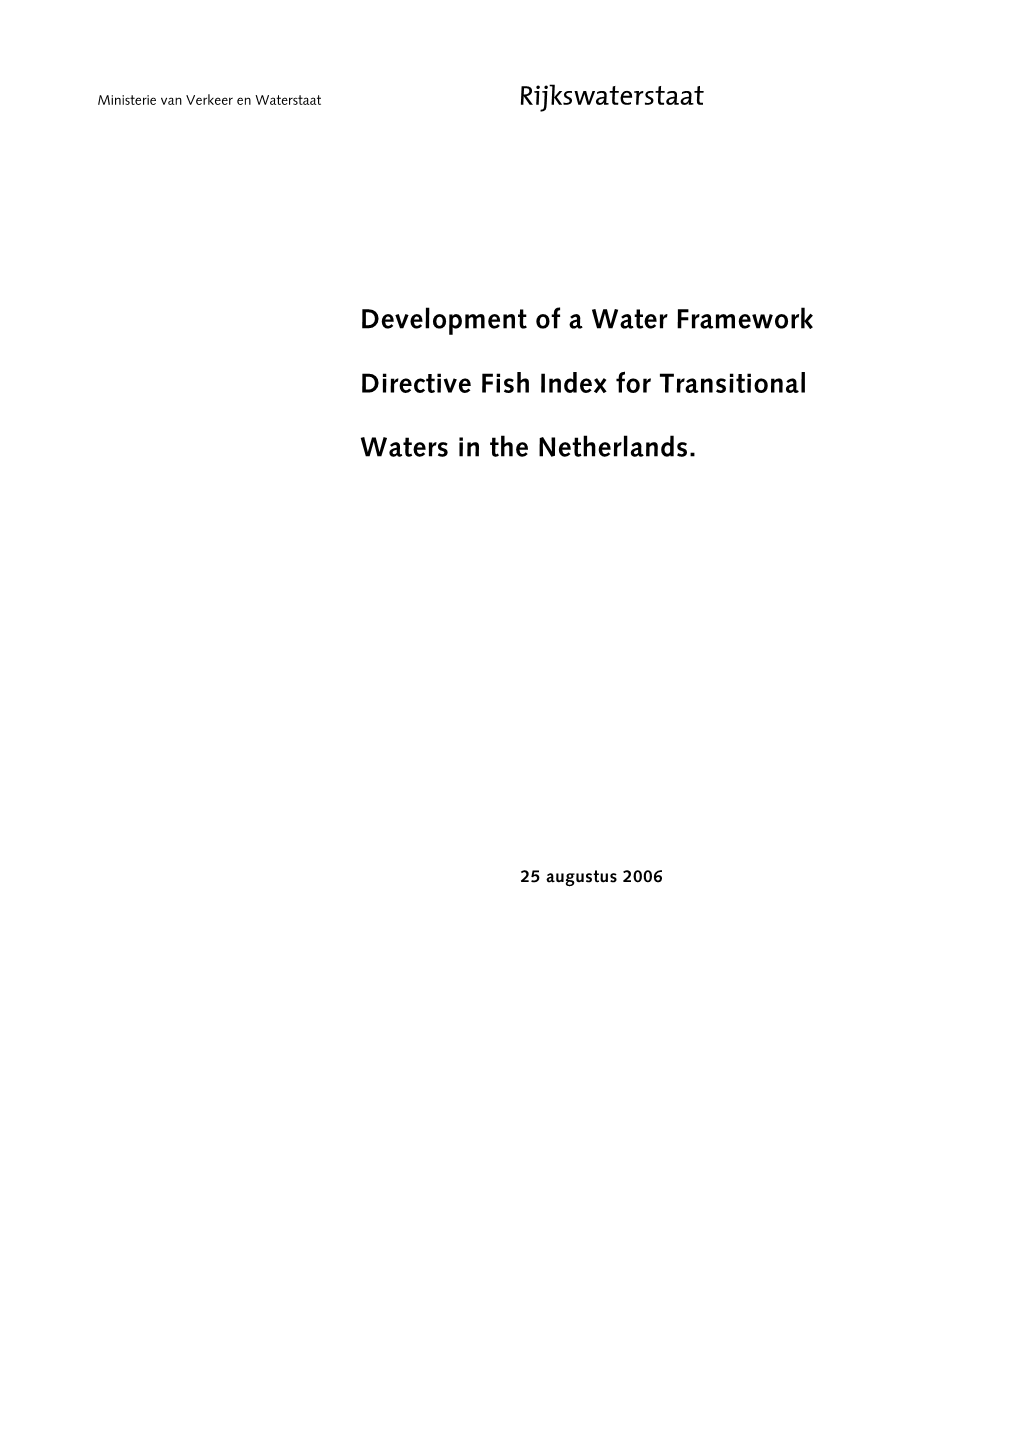 Development of a Water Framework